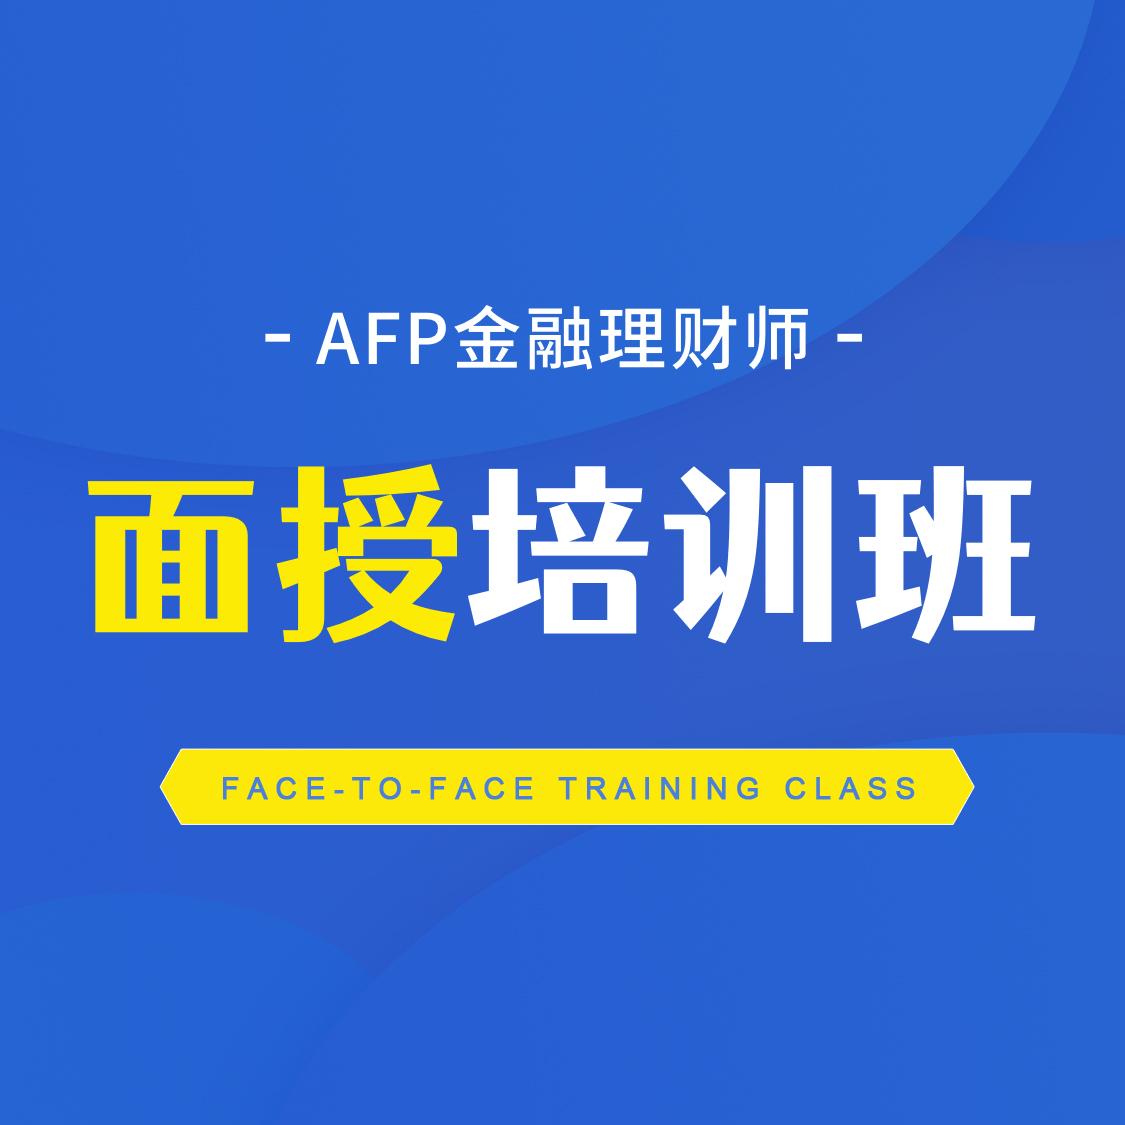 AFP面授培训班